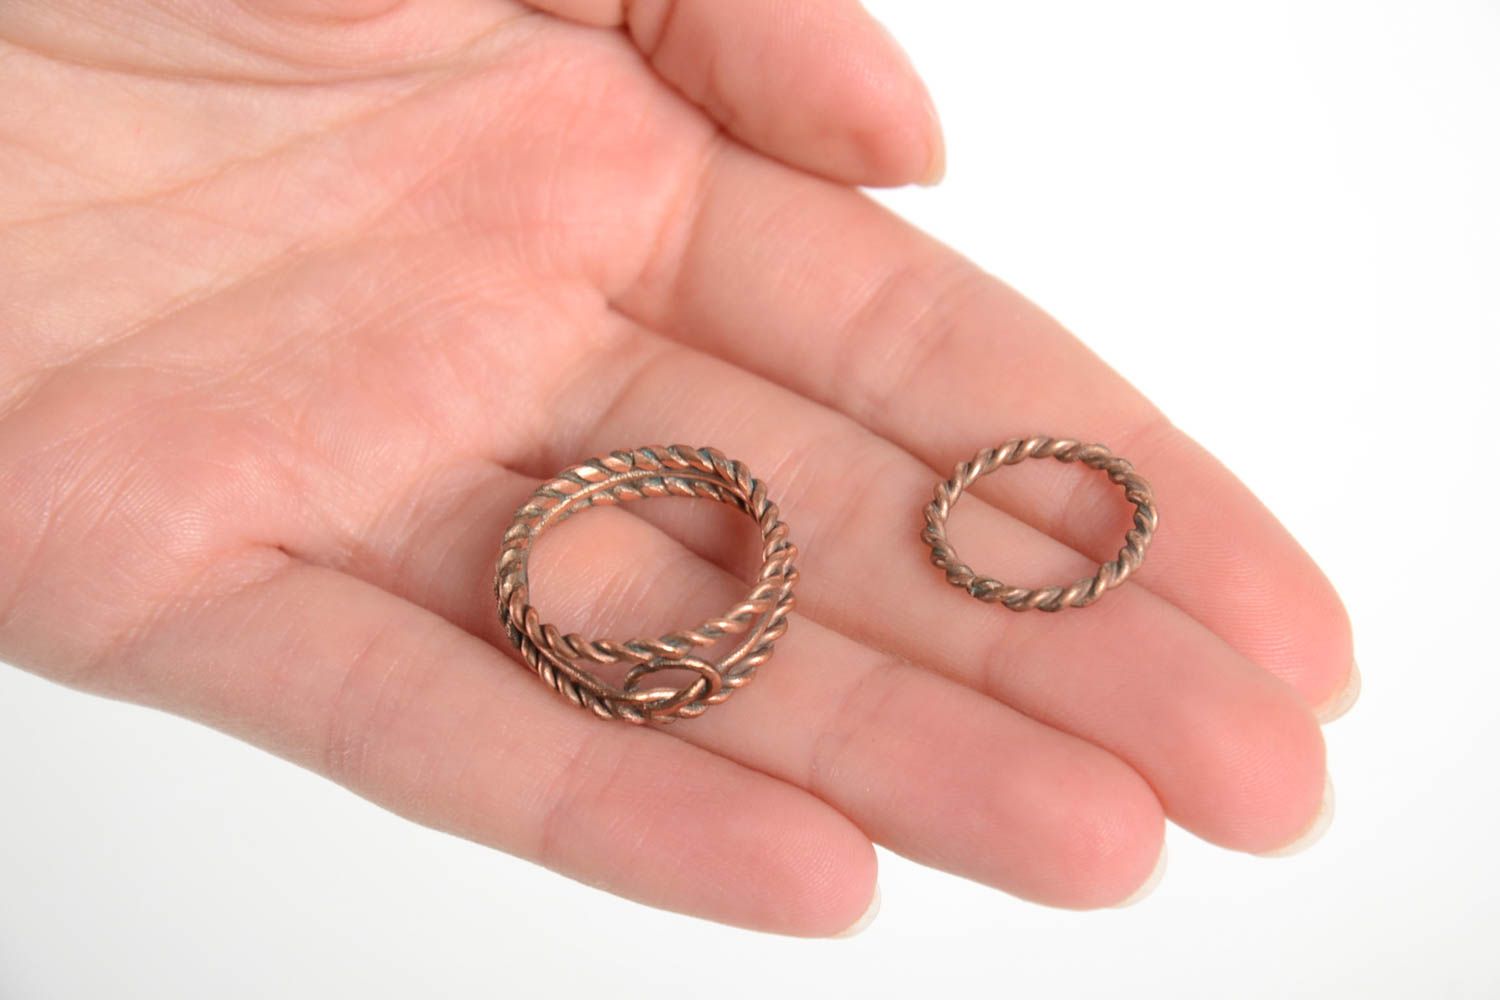 Красивые кольца ручной работы женские кольца из меди необычные кольца 2 штуки фото 3